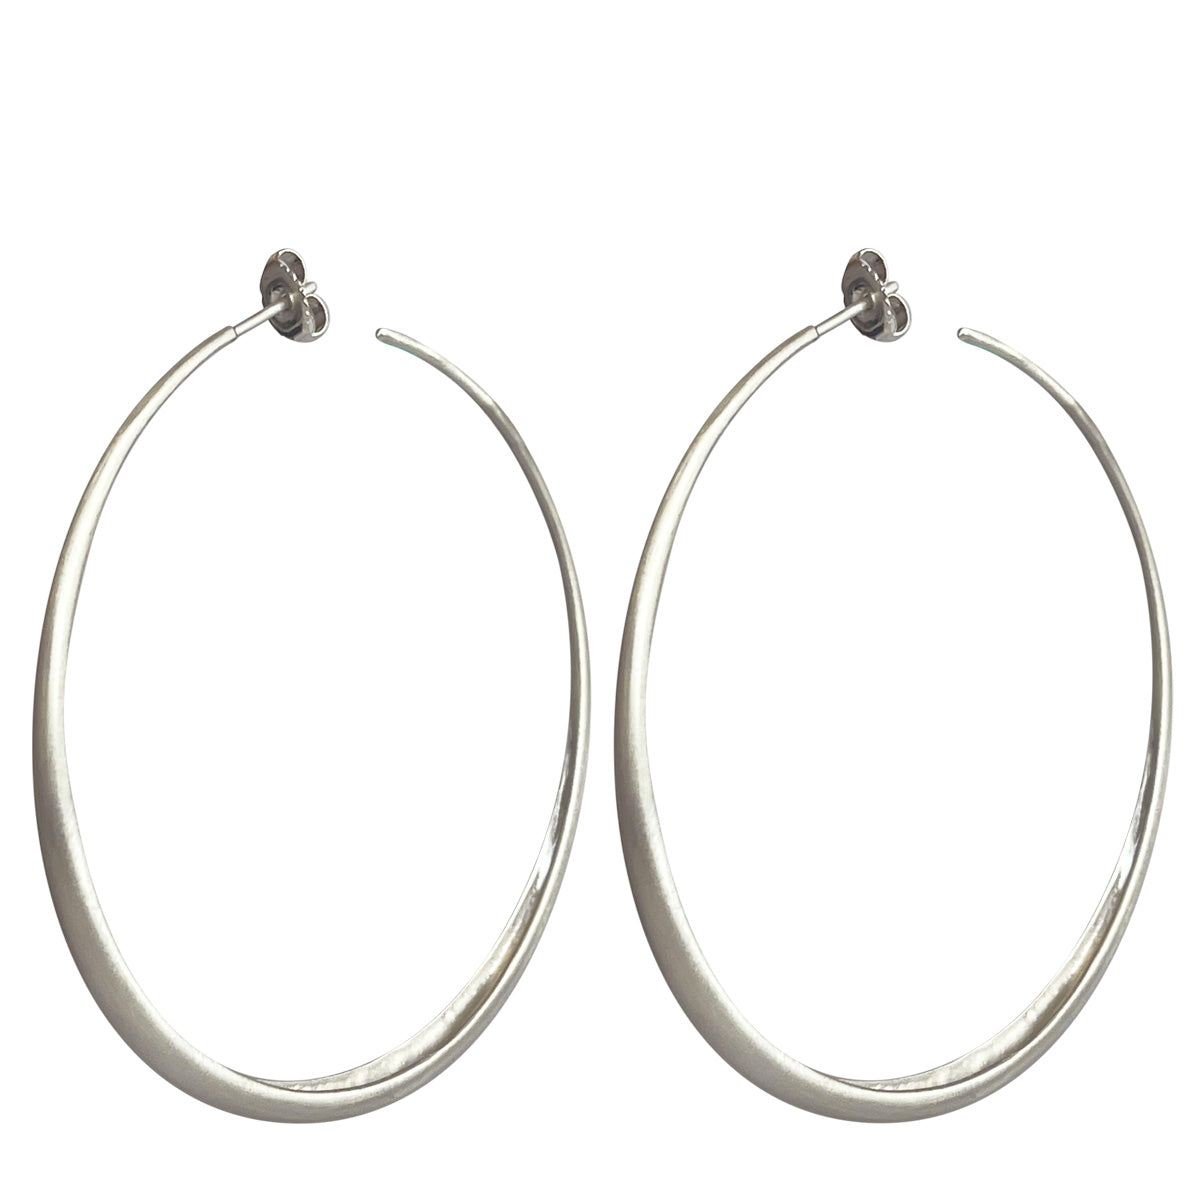 Big 2 9/16 Inch Sterling Silver Hoop Earrings 3mm | applesofgold.com